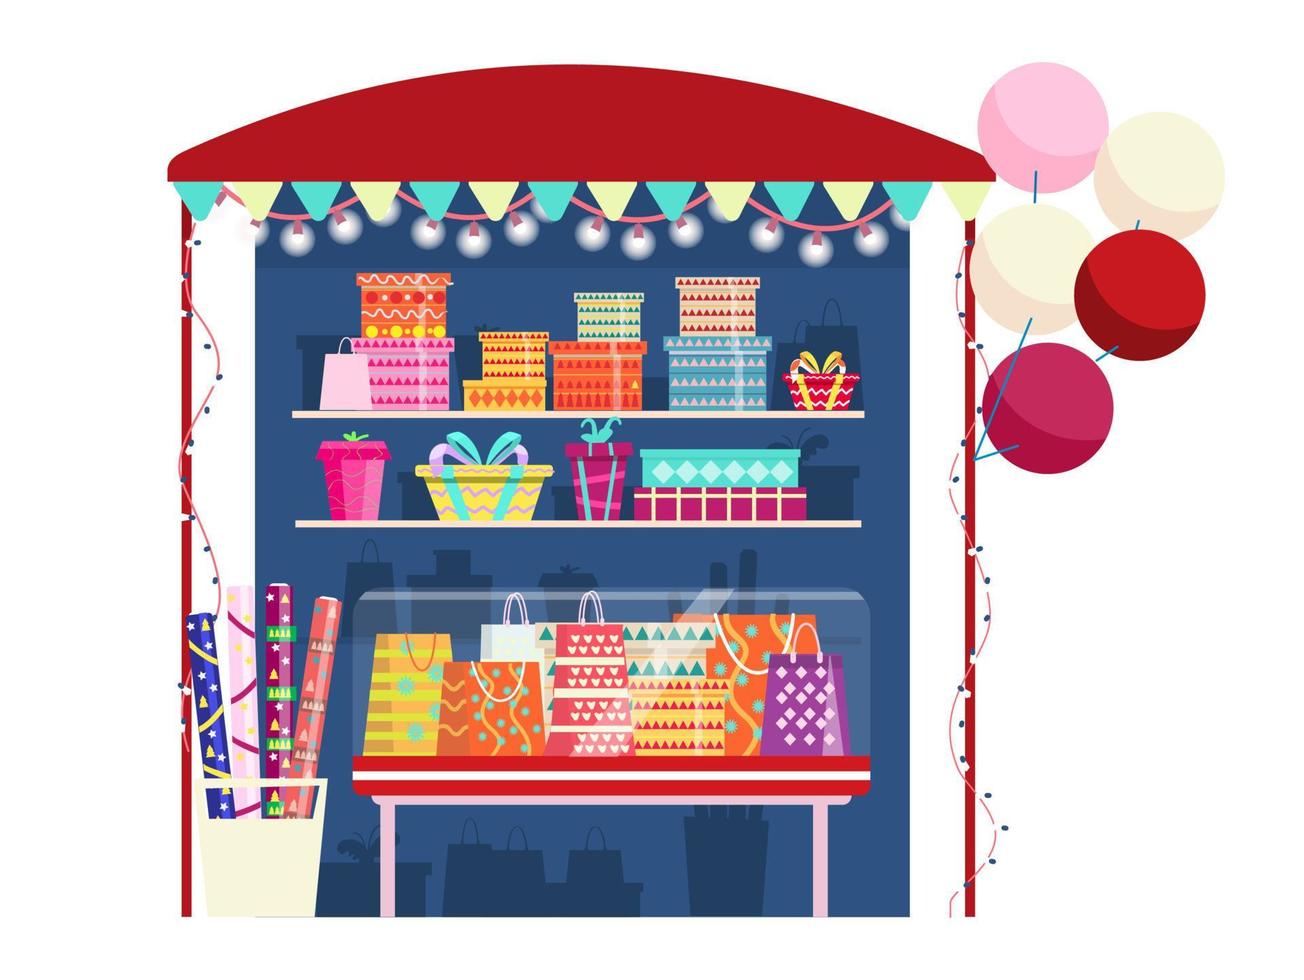 ilustração em vetor de serviço de embrulho de presentes. barraca com caixas de presentes, papel de embrulho, guirlandas e balões.